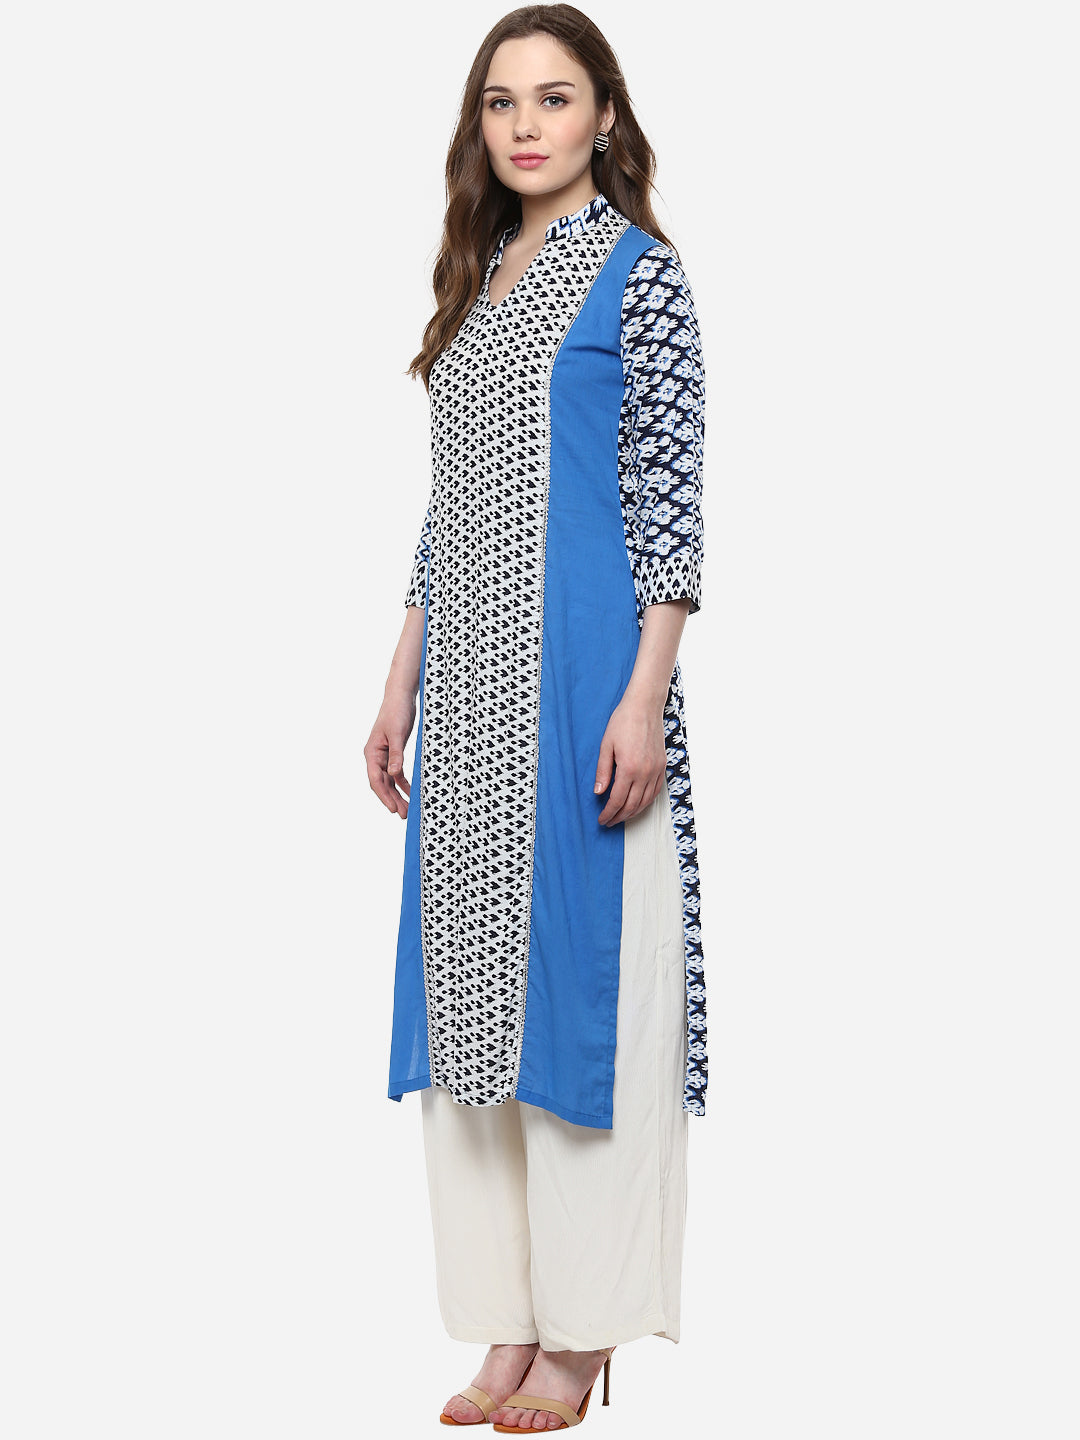 Women's Rayon Blue and White Ikat Print Kurti